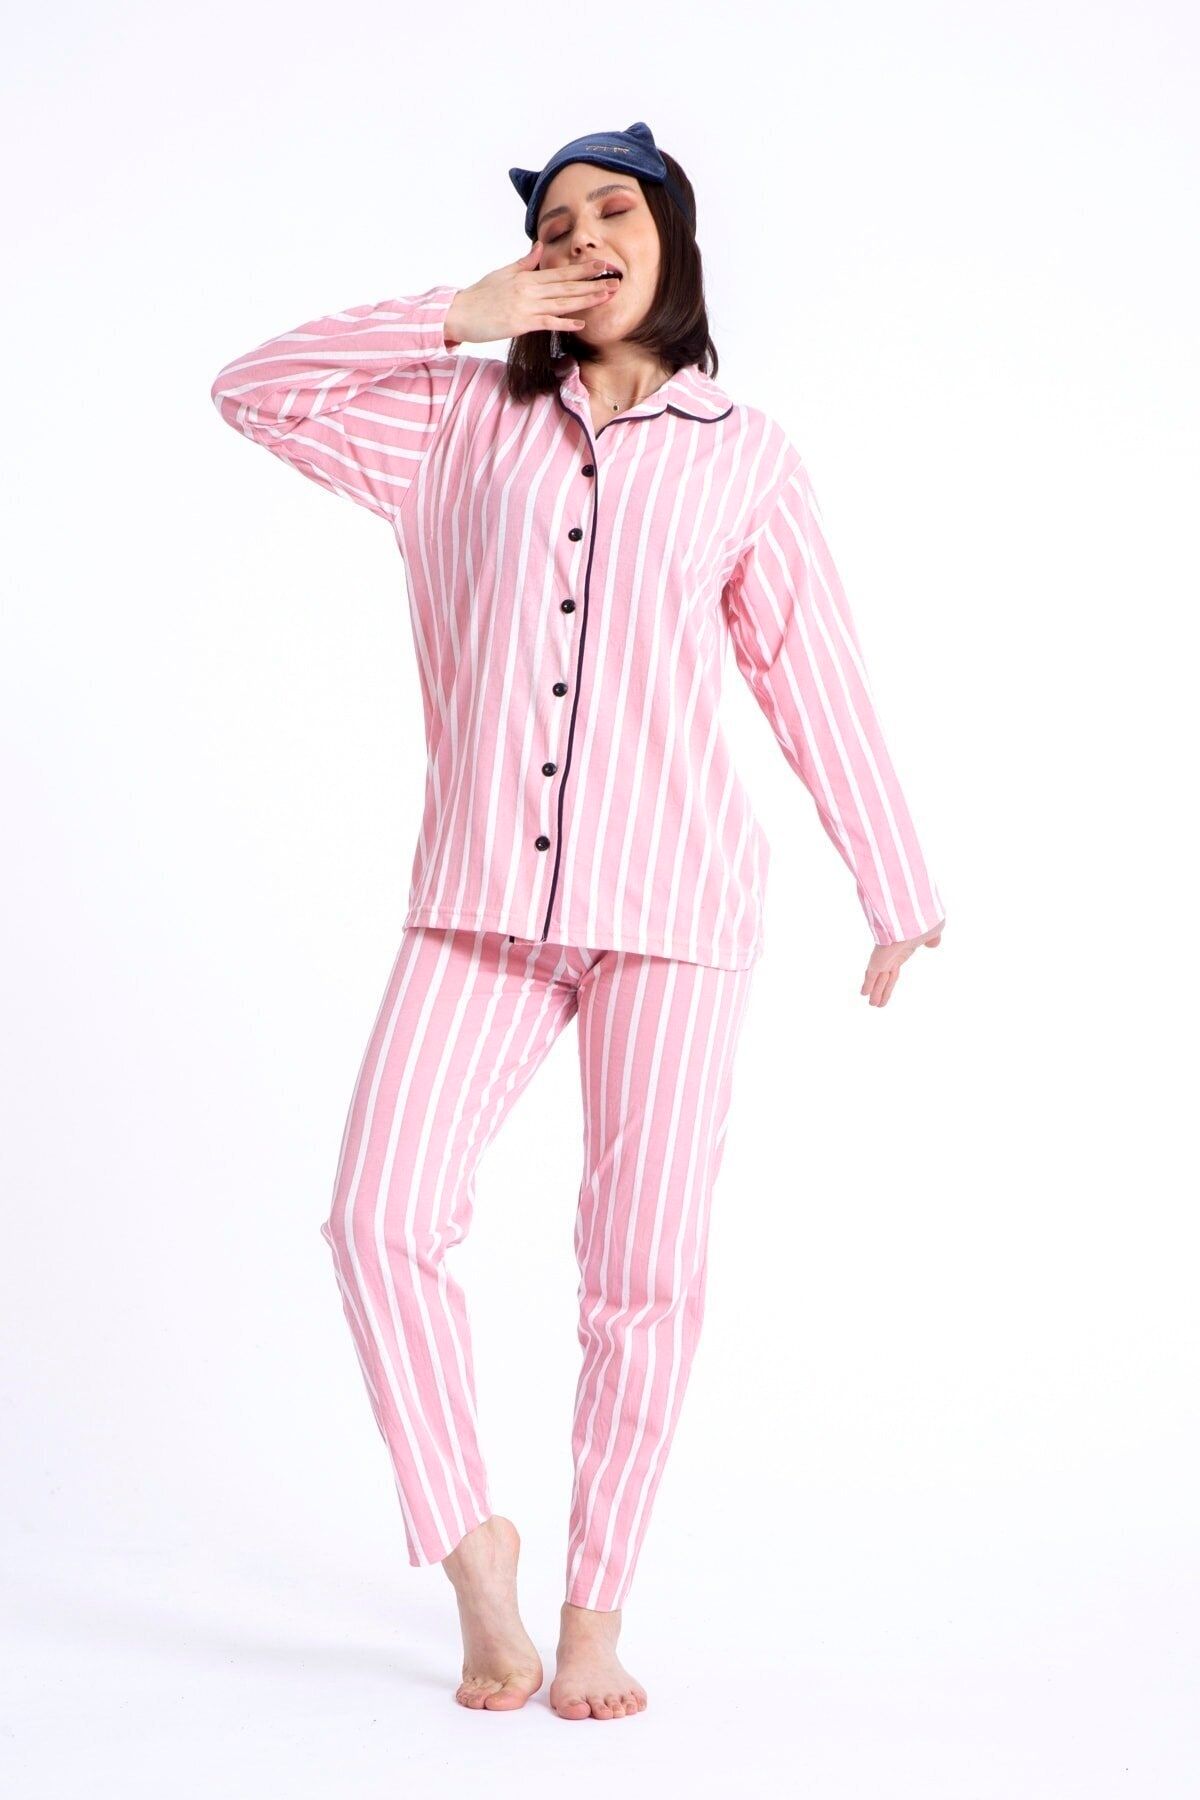 TAMPAP %100 Pamuk Gömlek Yaka Düğmeli Beyaz Çizgili Pembe Mürdüm Pudra Renk Kadın Gecelik Pijama Takımı